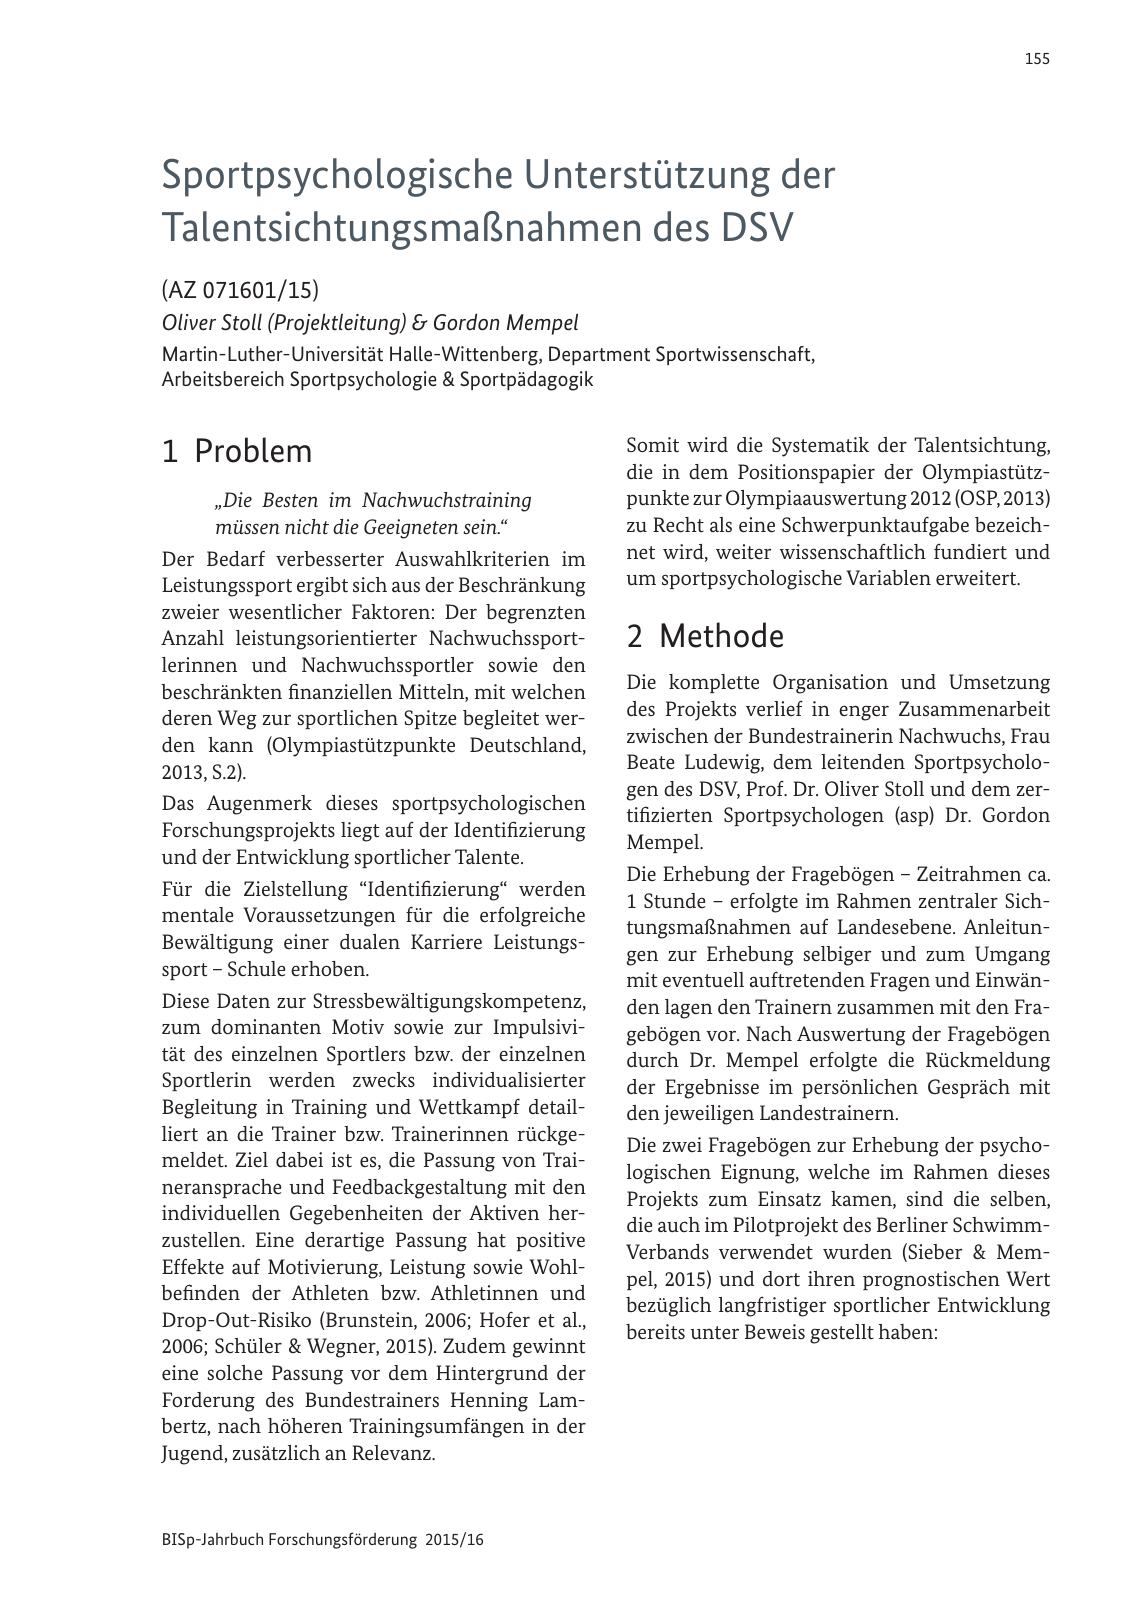 Vorschau BISp-Jahrbuch Forschungsförderung 2015/16 Seite 157